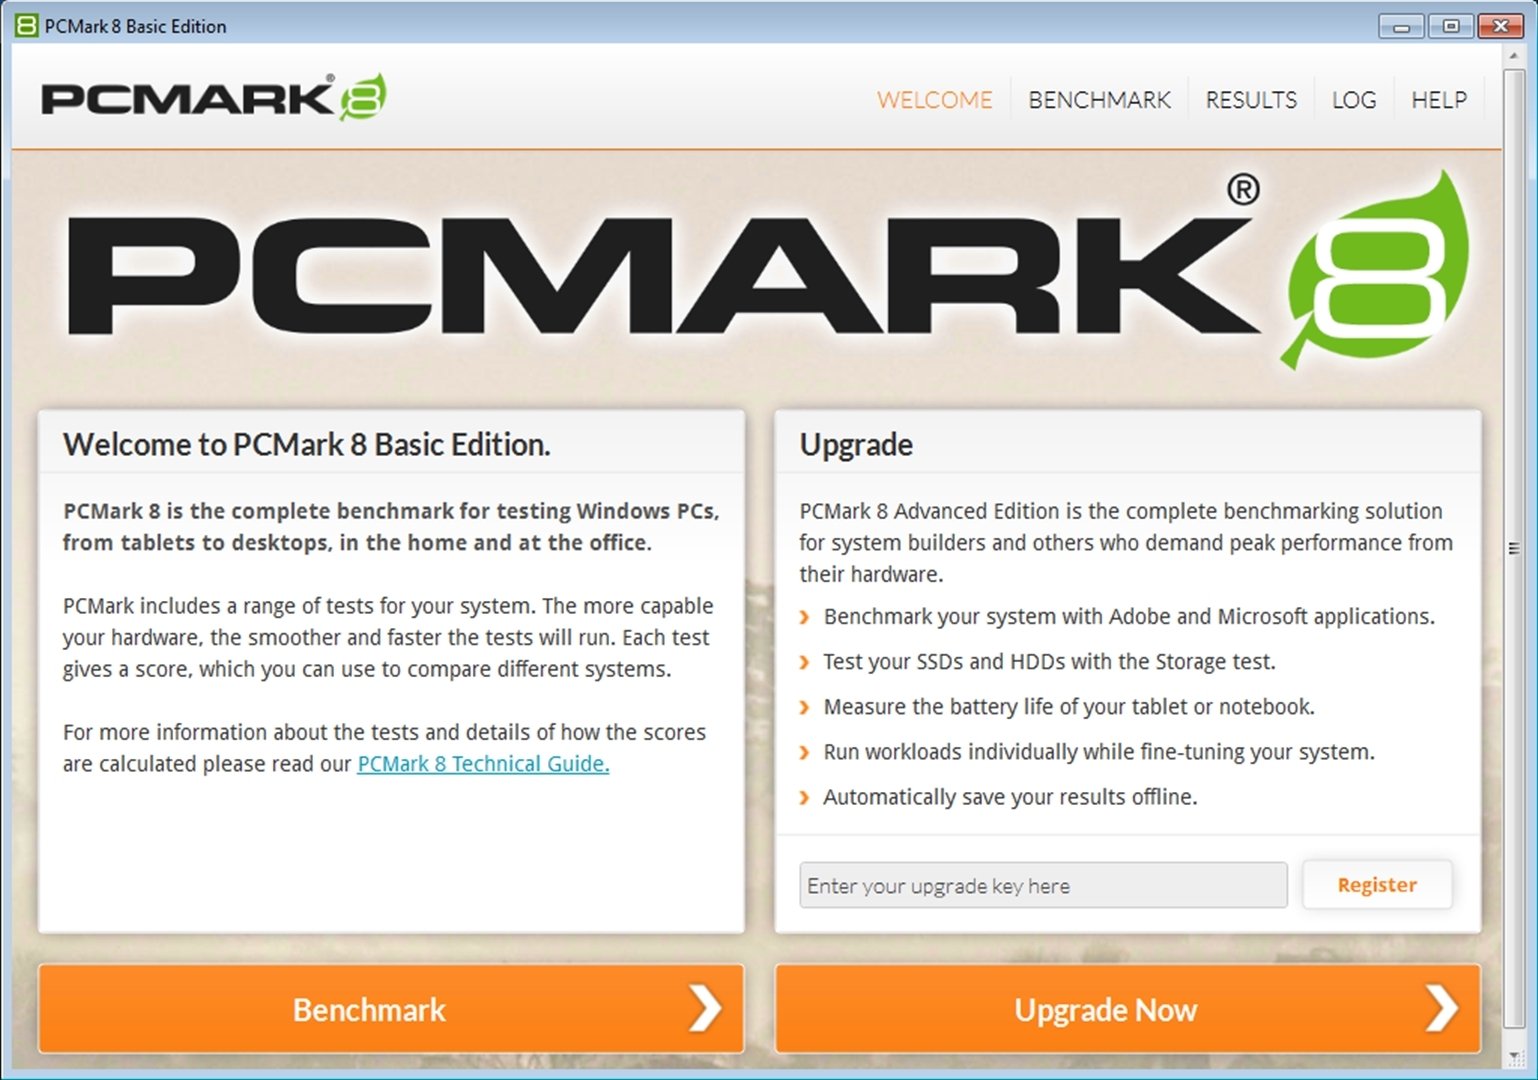 pcmark 10 upgrade key